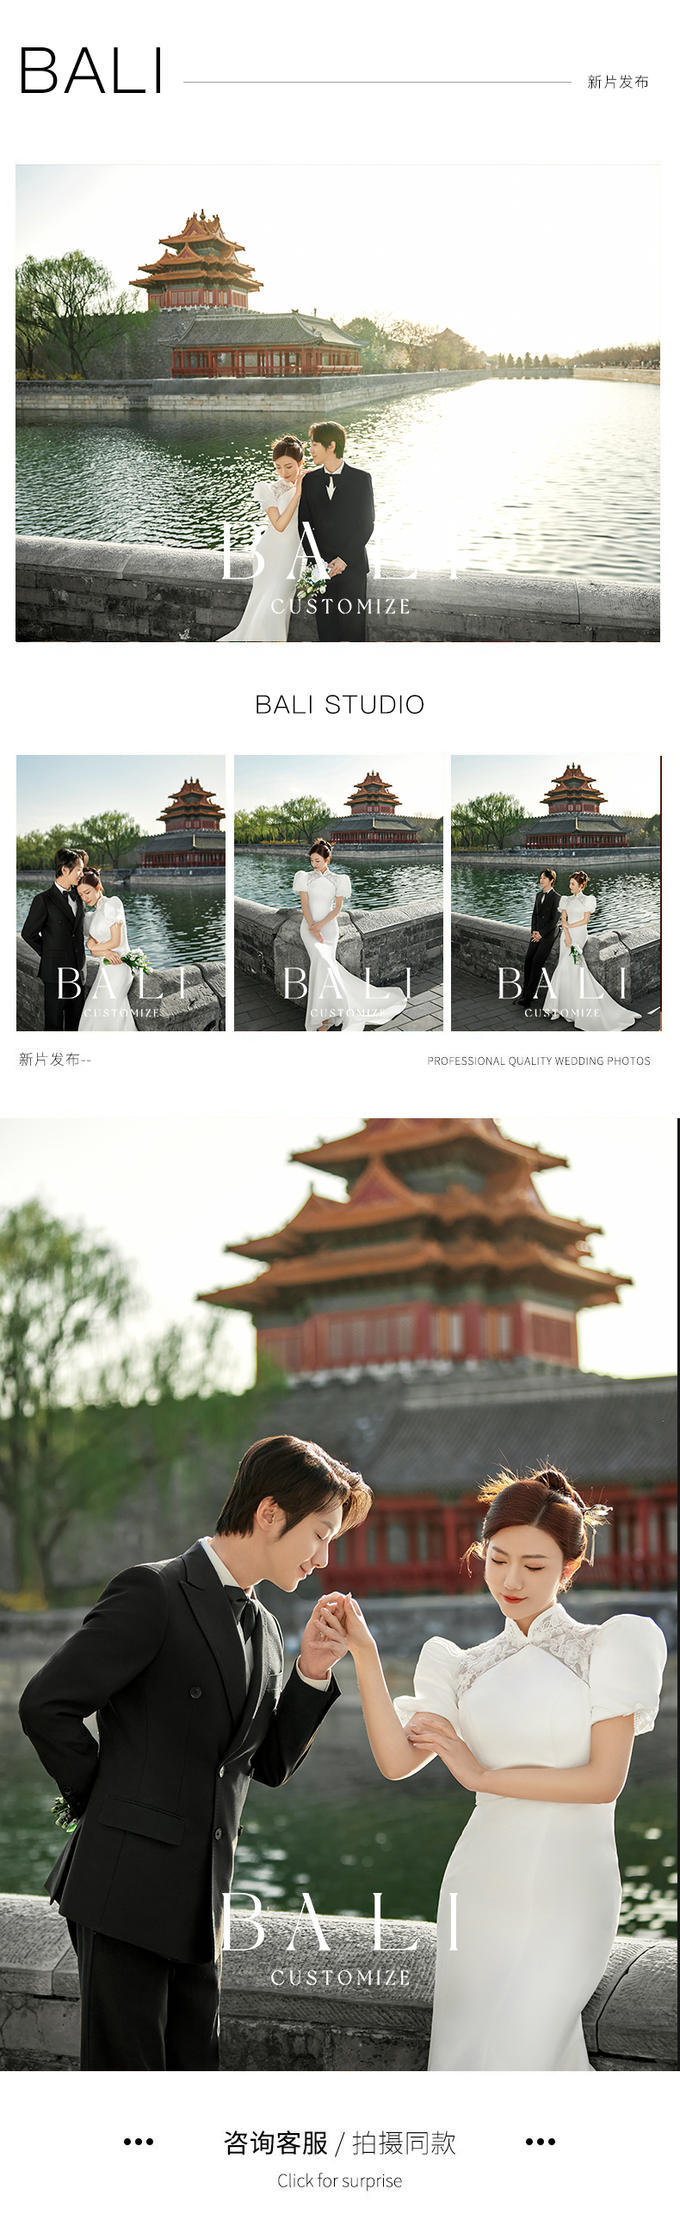 【北京|石家庄双城拍摄】风格任选|婚纱摄影